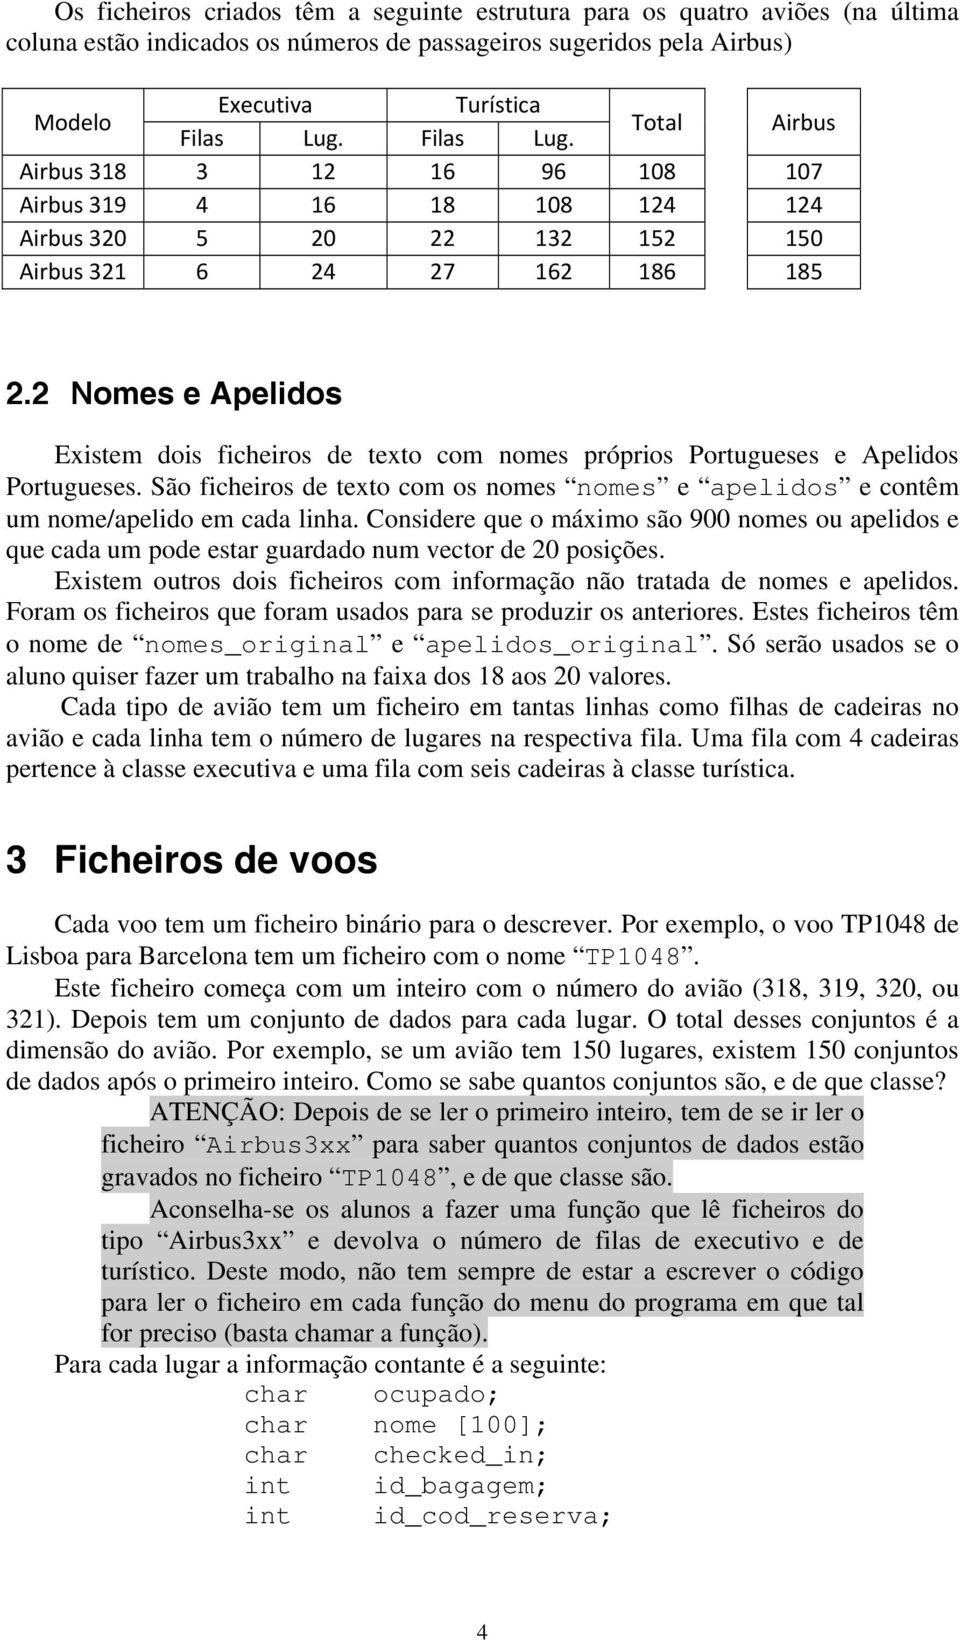 2 Nomes e Apelidos Existem dois ficheiros de texto com nomes próprios Portugueses e Apelidos Portugueses. São ficheiros de texto com os nomes nomes e apelidos e contêm um nome/apelido em cada linha.